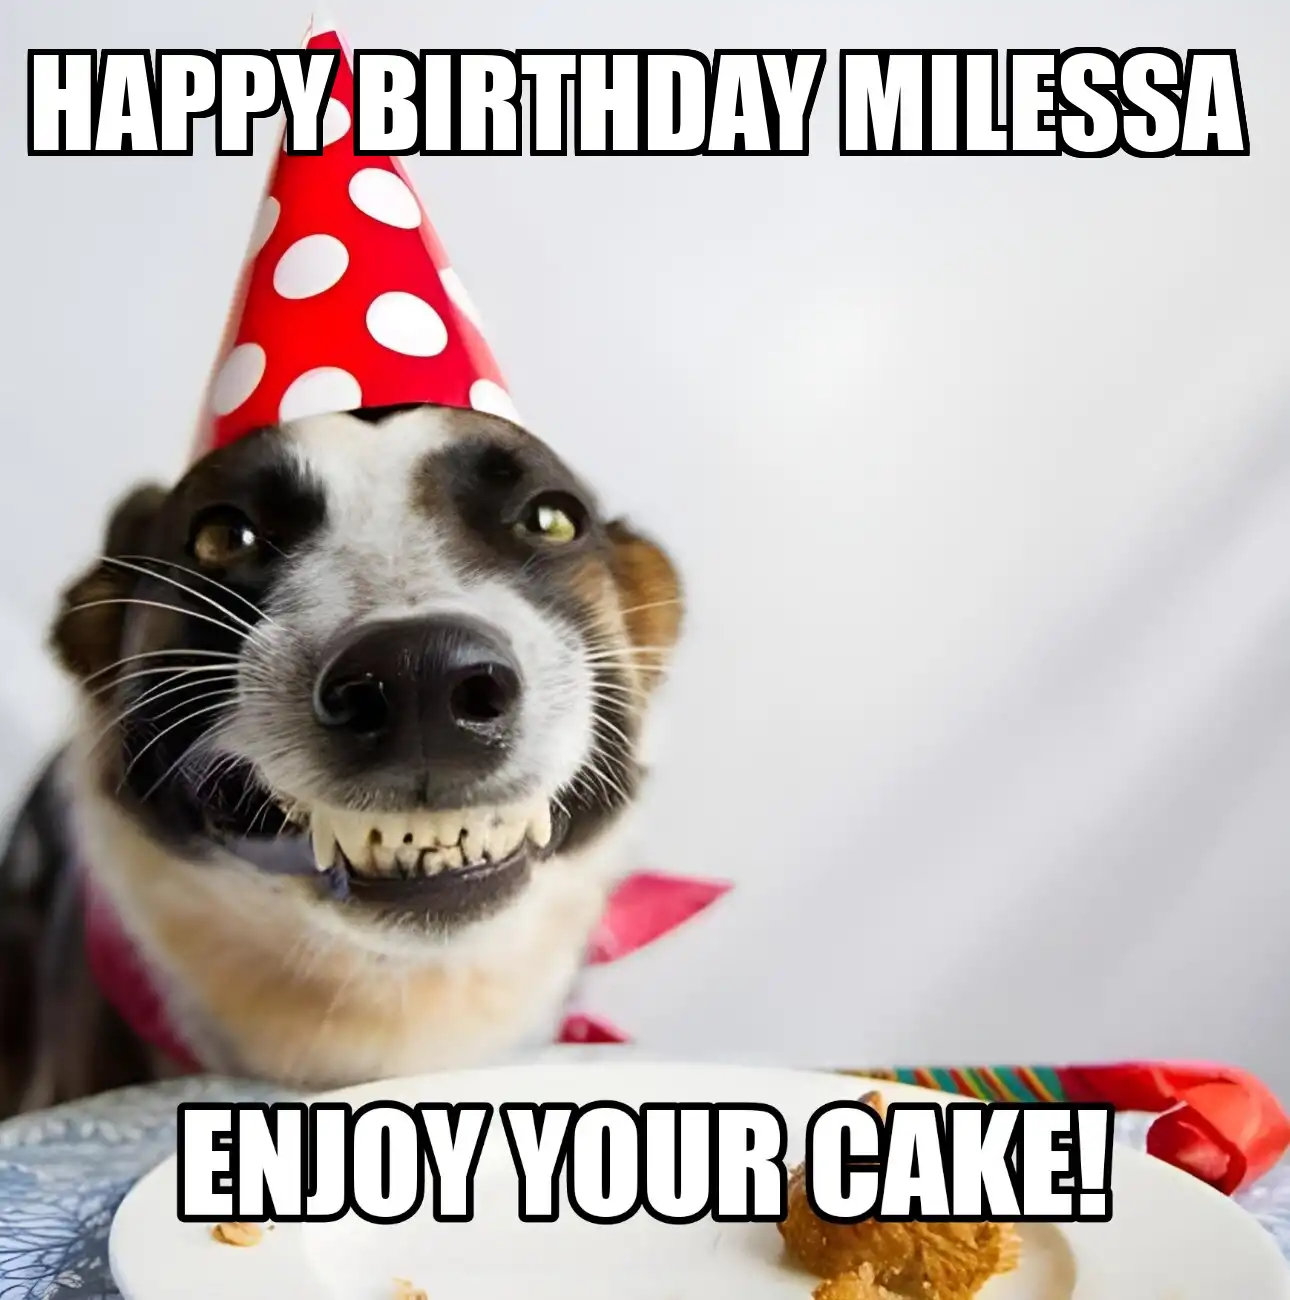 Happy Birthday Milessa Enjoy Your Cake Dog Meme